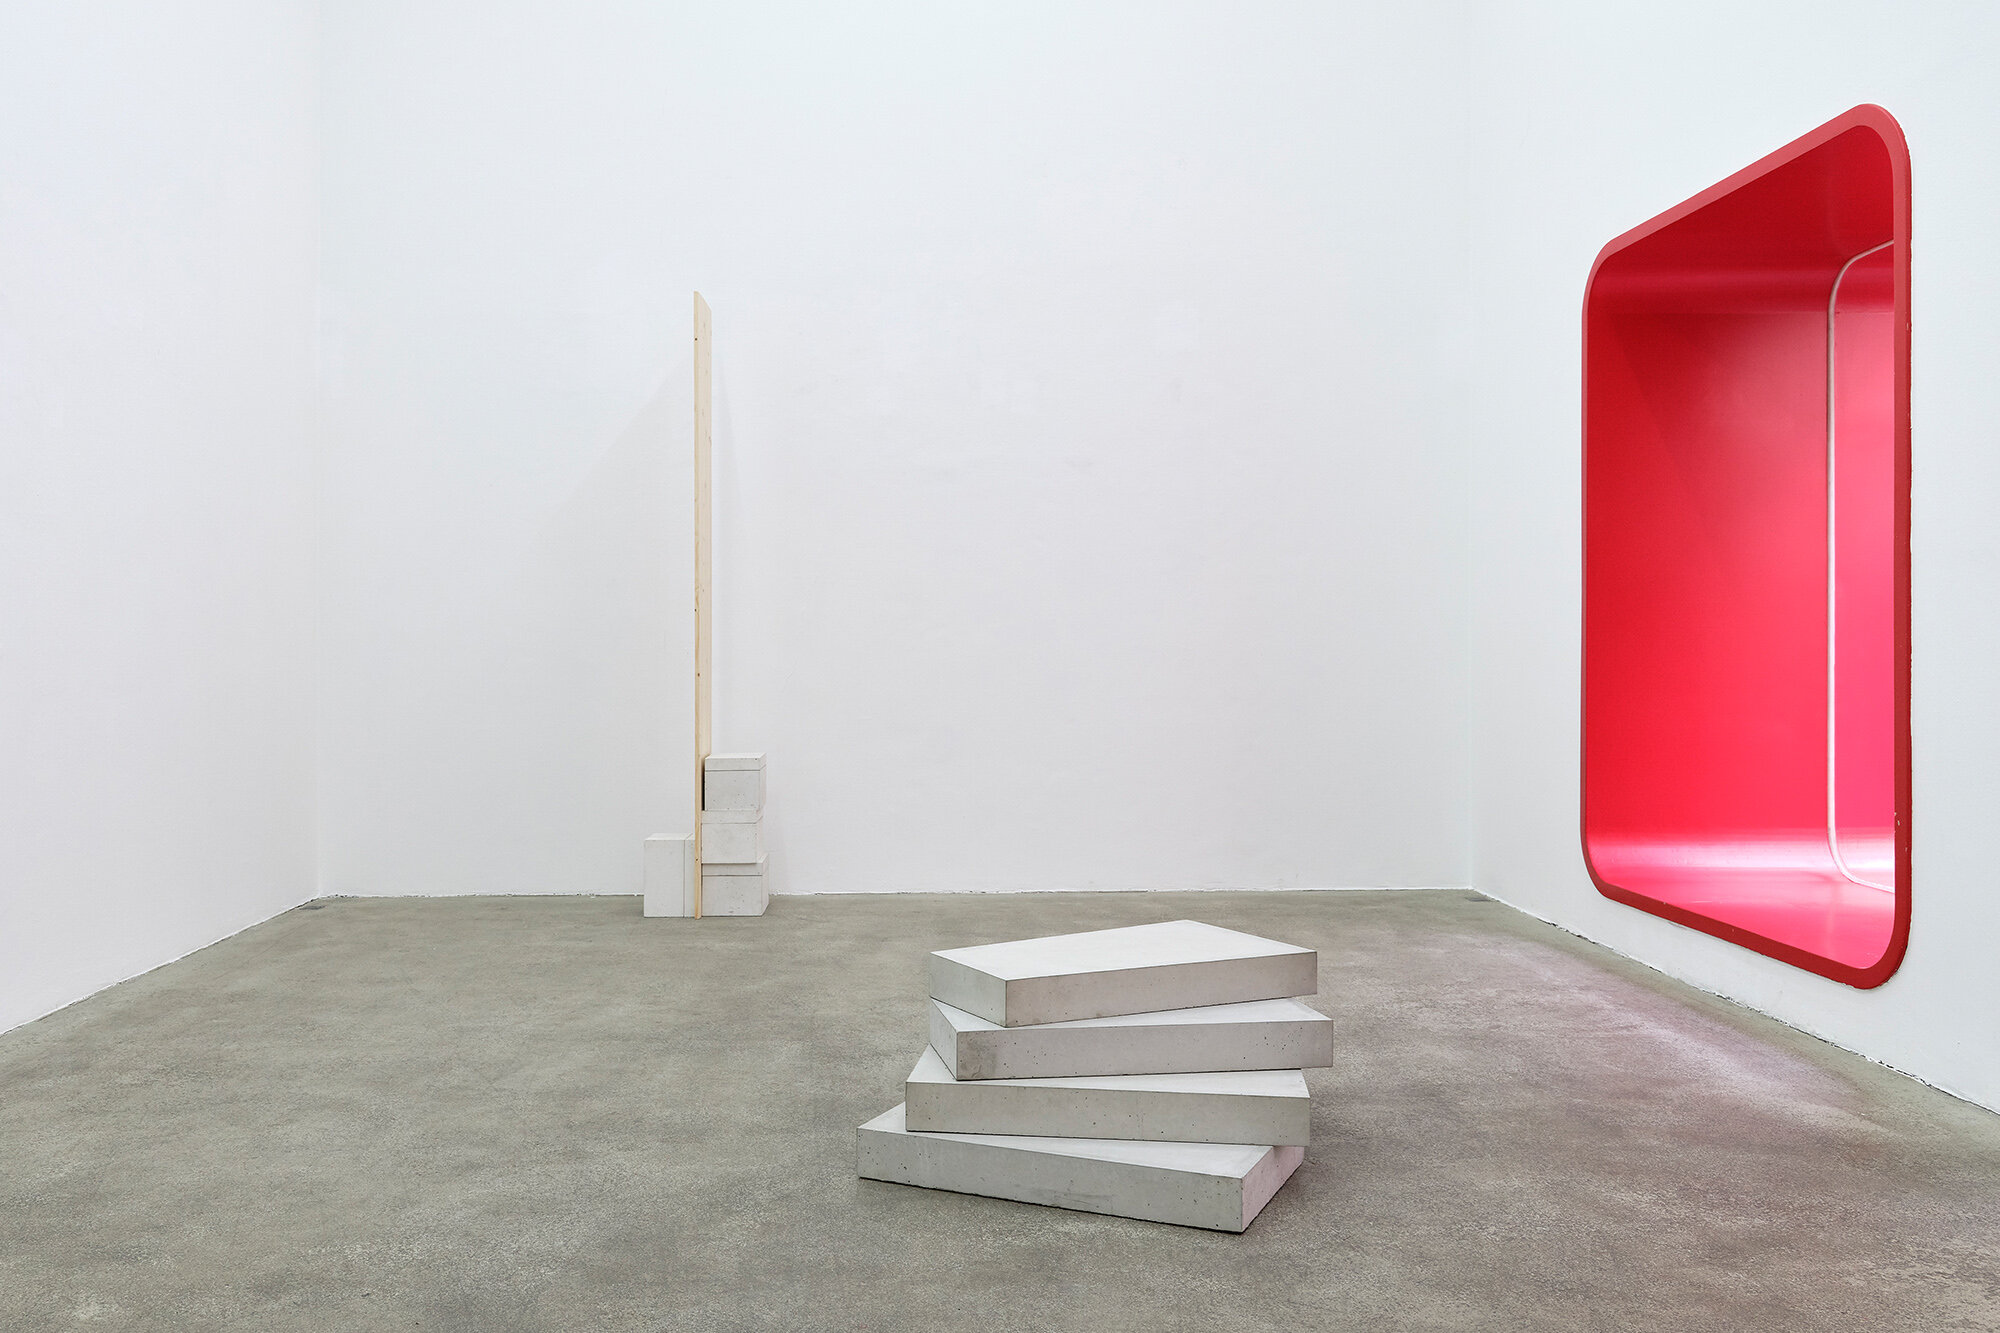 Galerie+Johann+Widauer-Exhibition-2020-Hubert-Kiecol-03.jpg